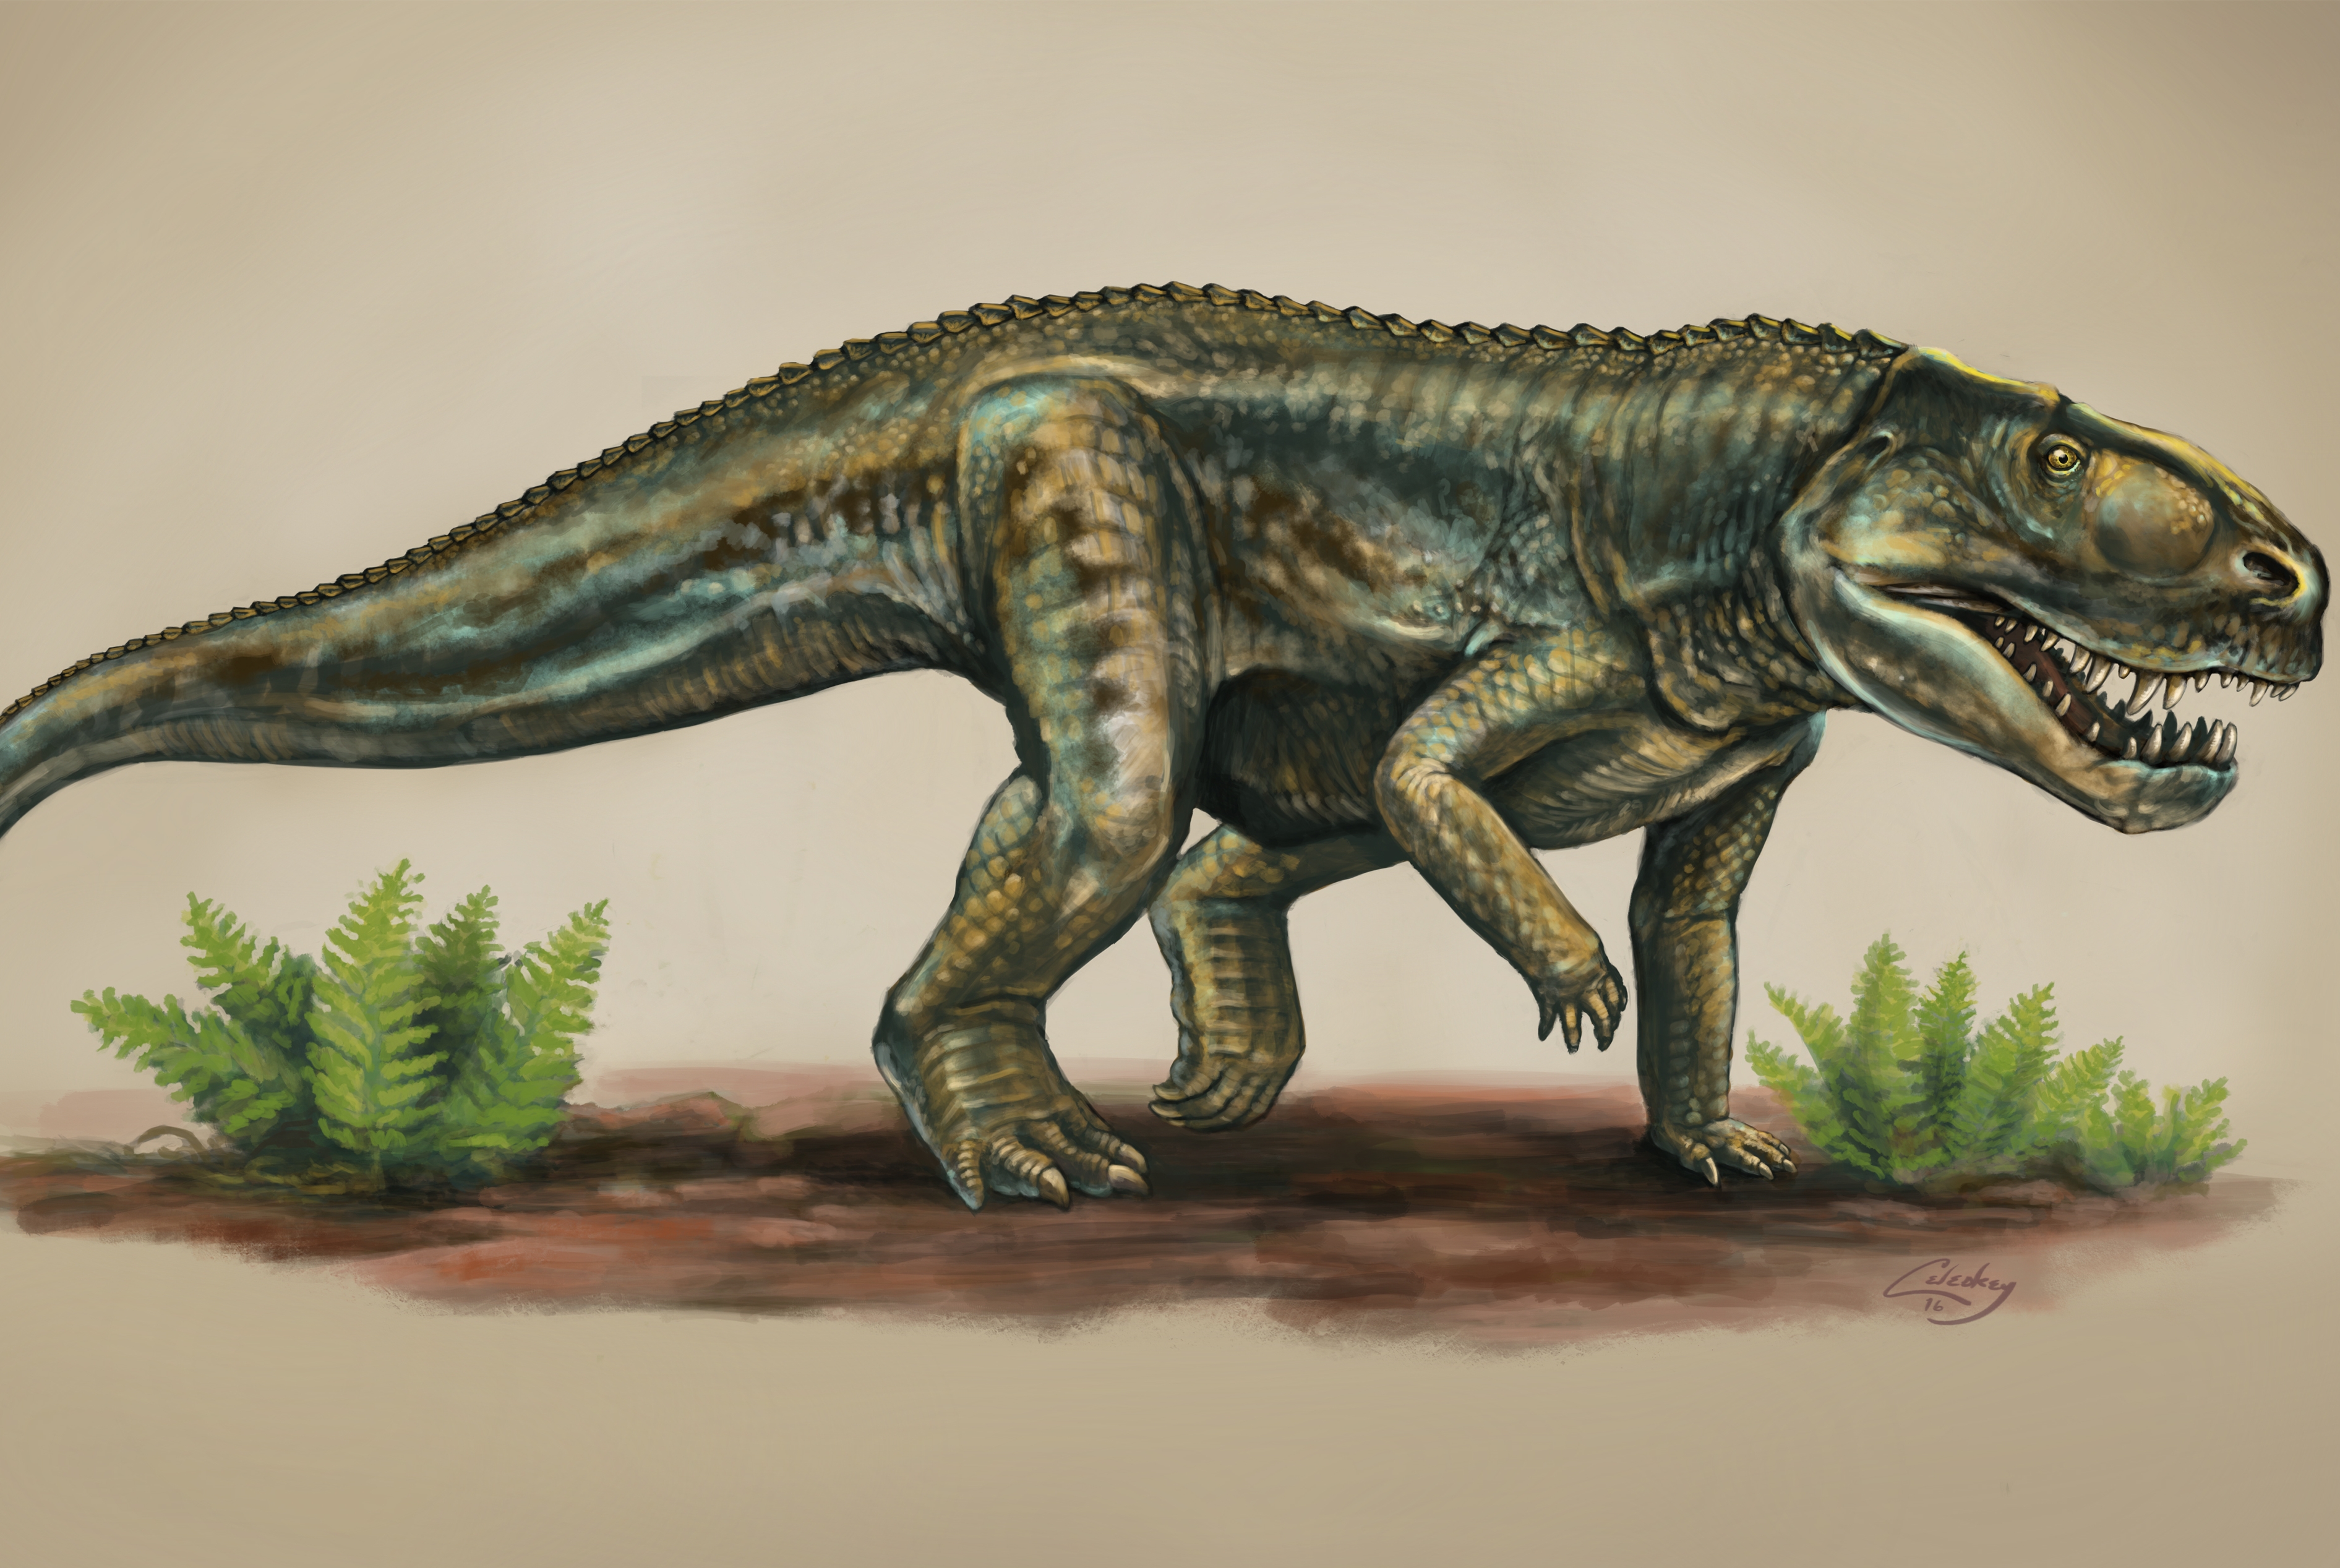 Динозавры это ящеры. Архозавры мезозой. Архозавры предки крокодил. Архозавры Триасового периода. Равизухии Триасового периода.